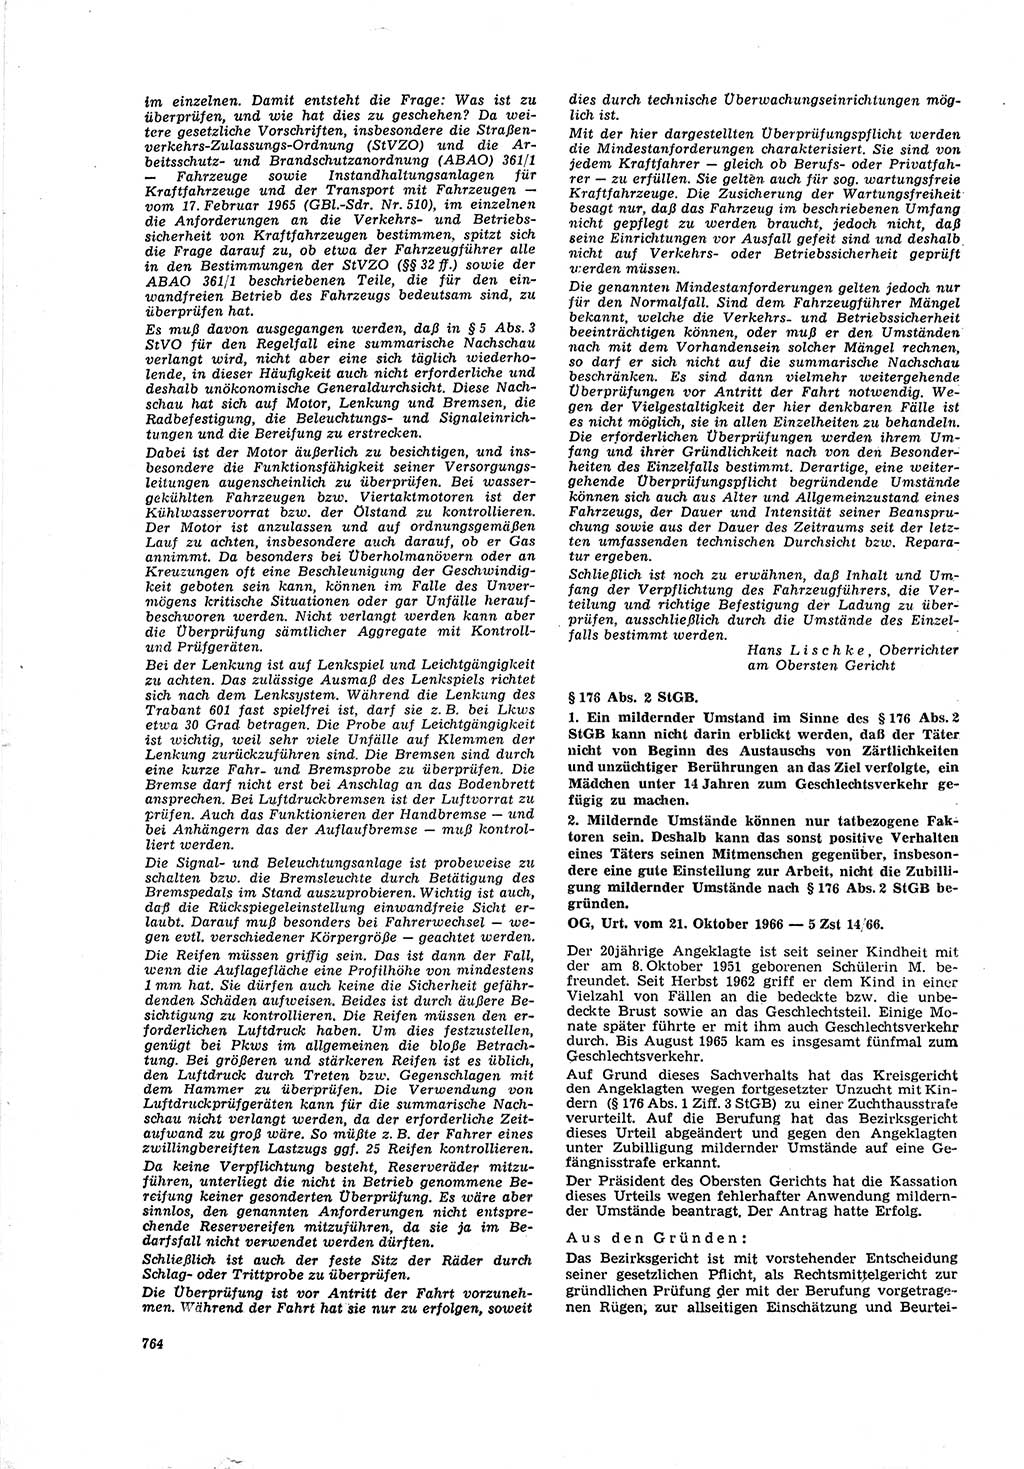 Neue Justiz (NJ), Zeitschrift für Recht und Rechtswissenschaft [Deutsche Demokratische Republik (DDR)], 20. Jahrgang 1966, Seite 764 (NJ DDR 1966, S. 764)